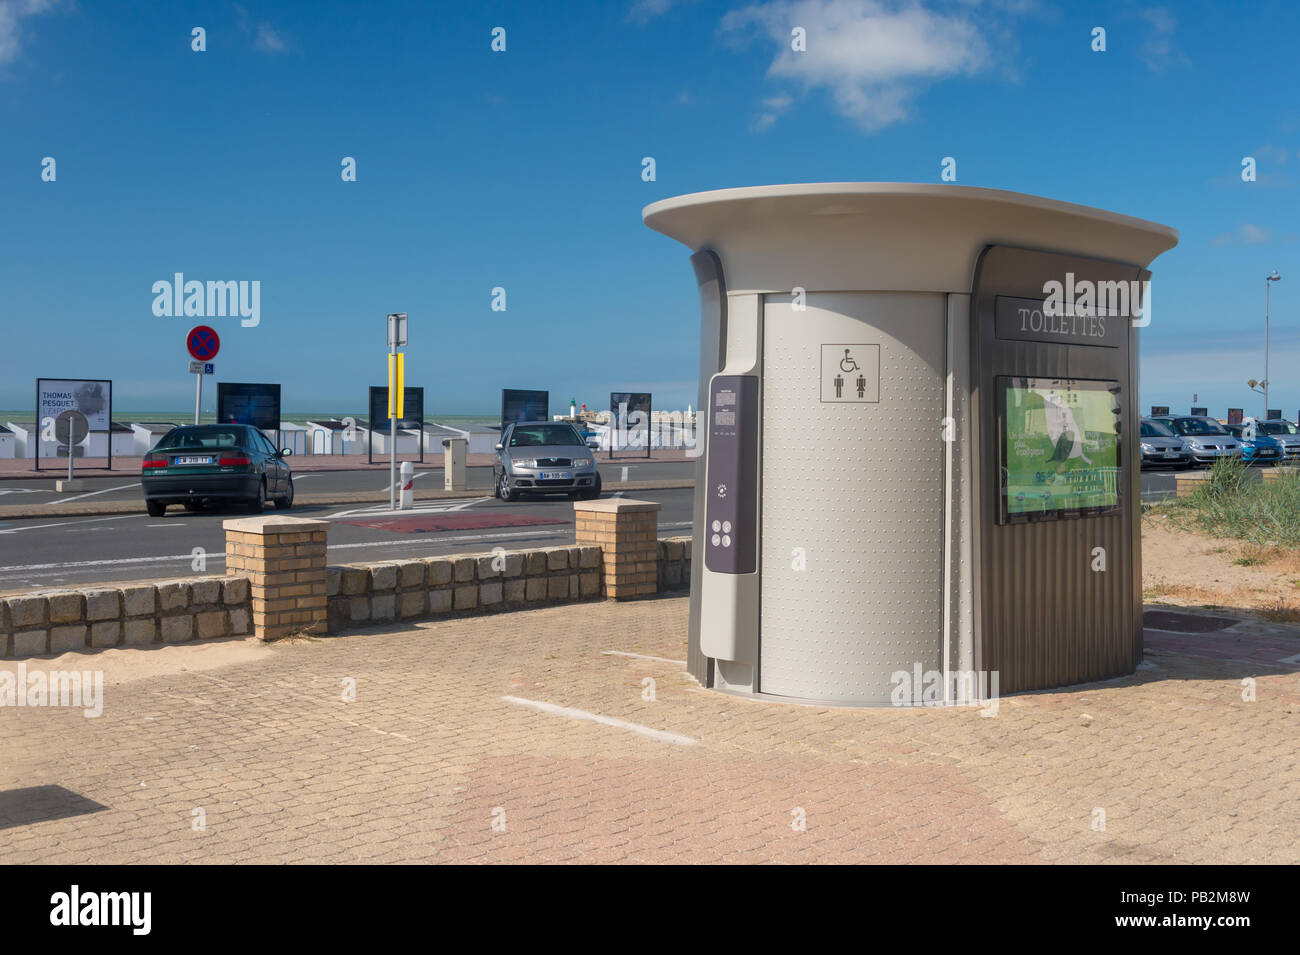 Calais, France - 19 June 2018: 'Sanisette' public toilet along the seafront. Stock Photo